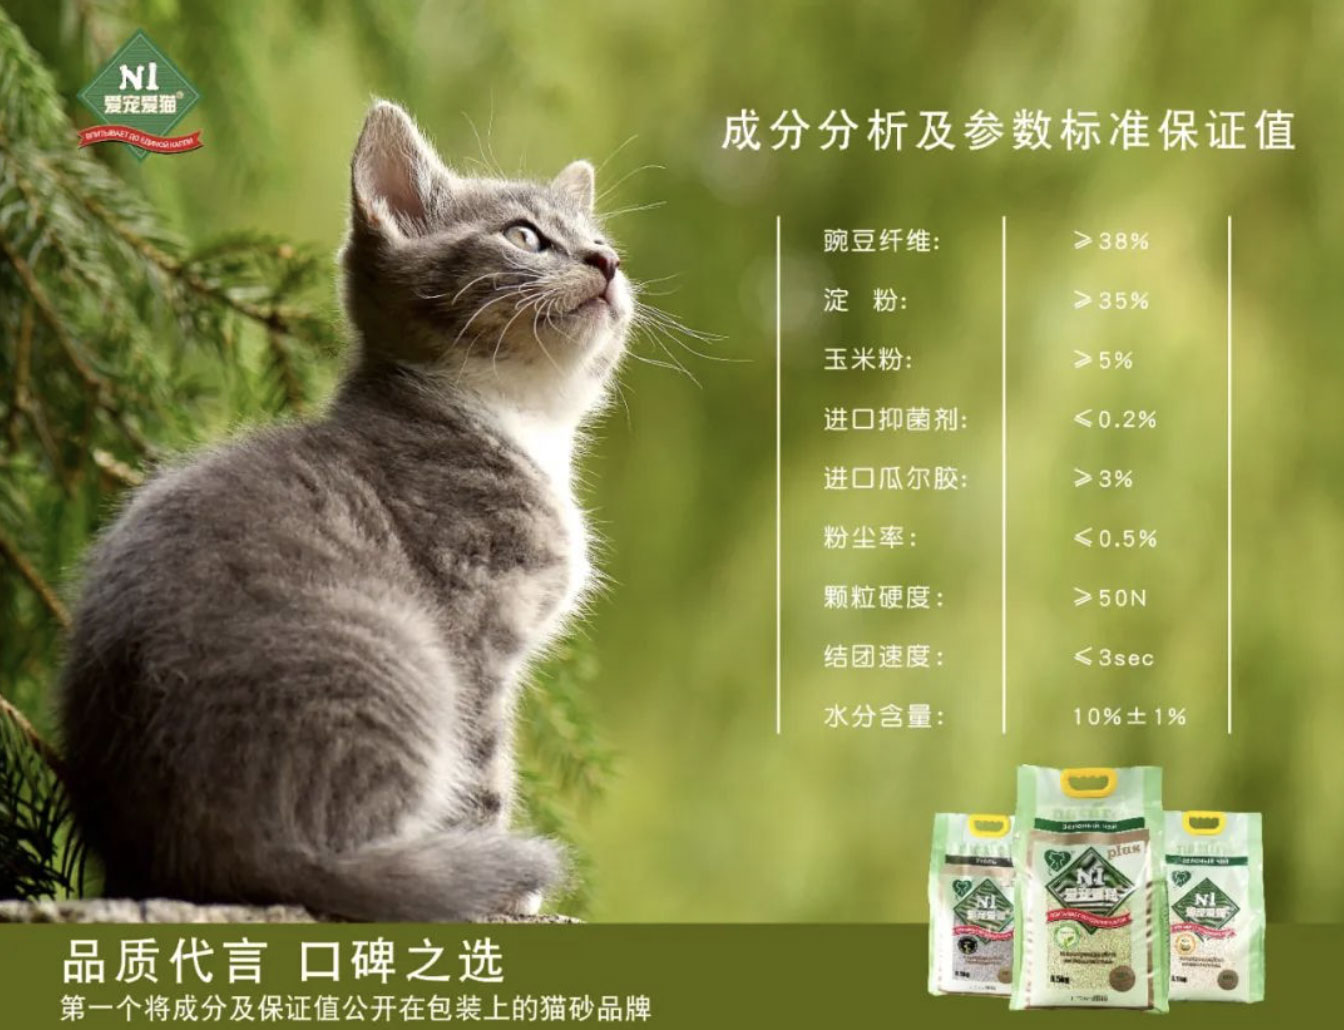 荆州爱宠爱猫： N1猫砂新包装会公布成分保证值，坚持做猫砂行